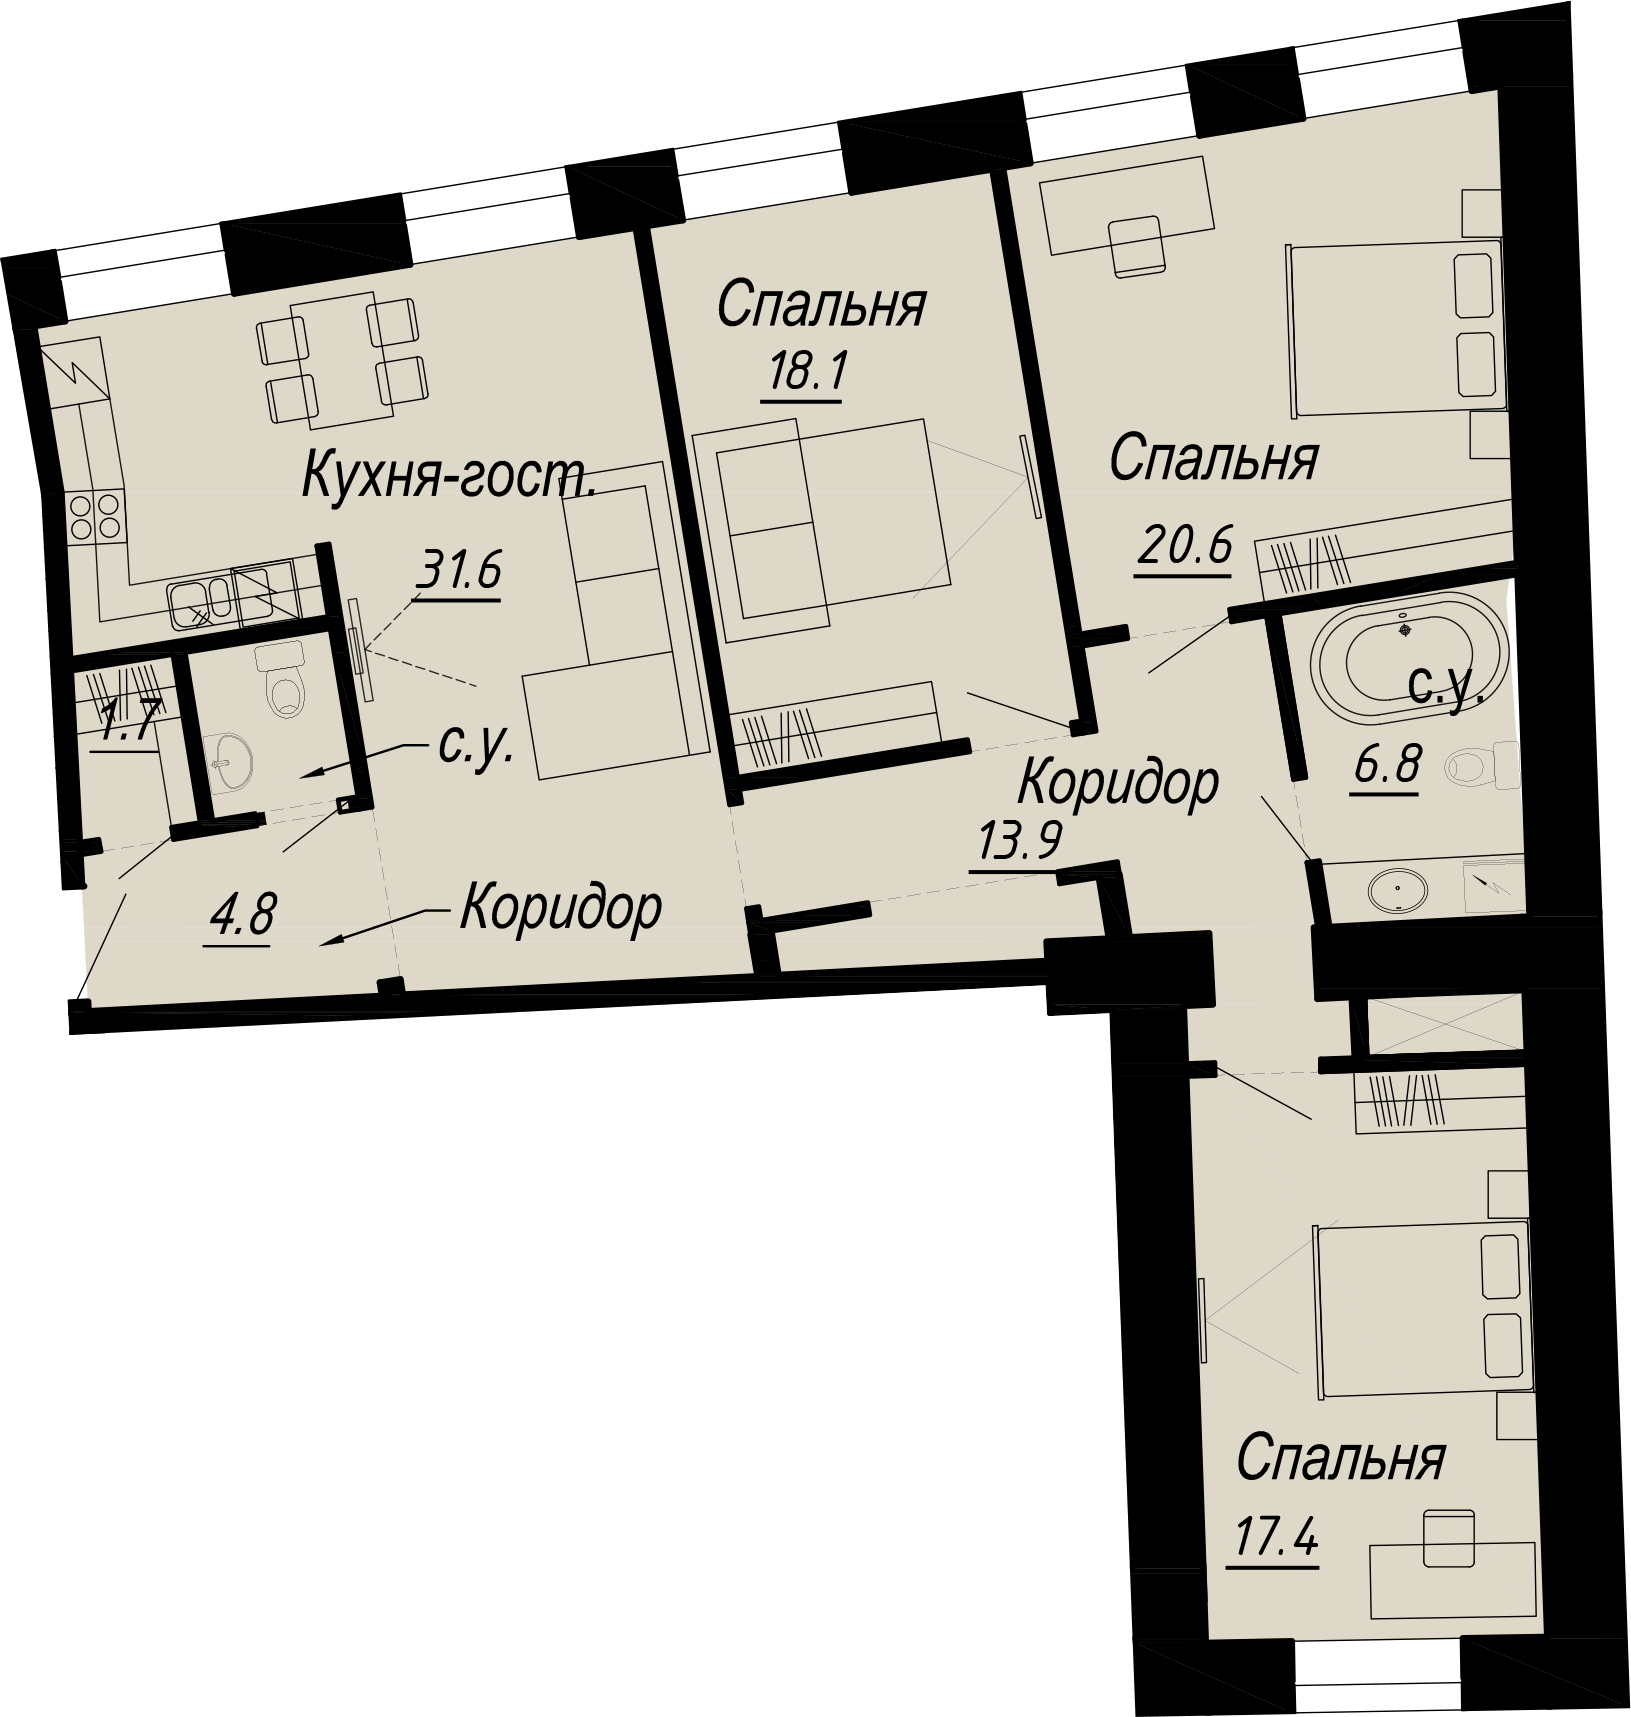 3-комнатная квартира  №19-5 в Meltzer Hall: 119.44 м², этаж 5 - купить в Санкт-Петербурге